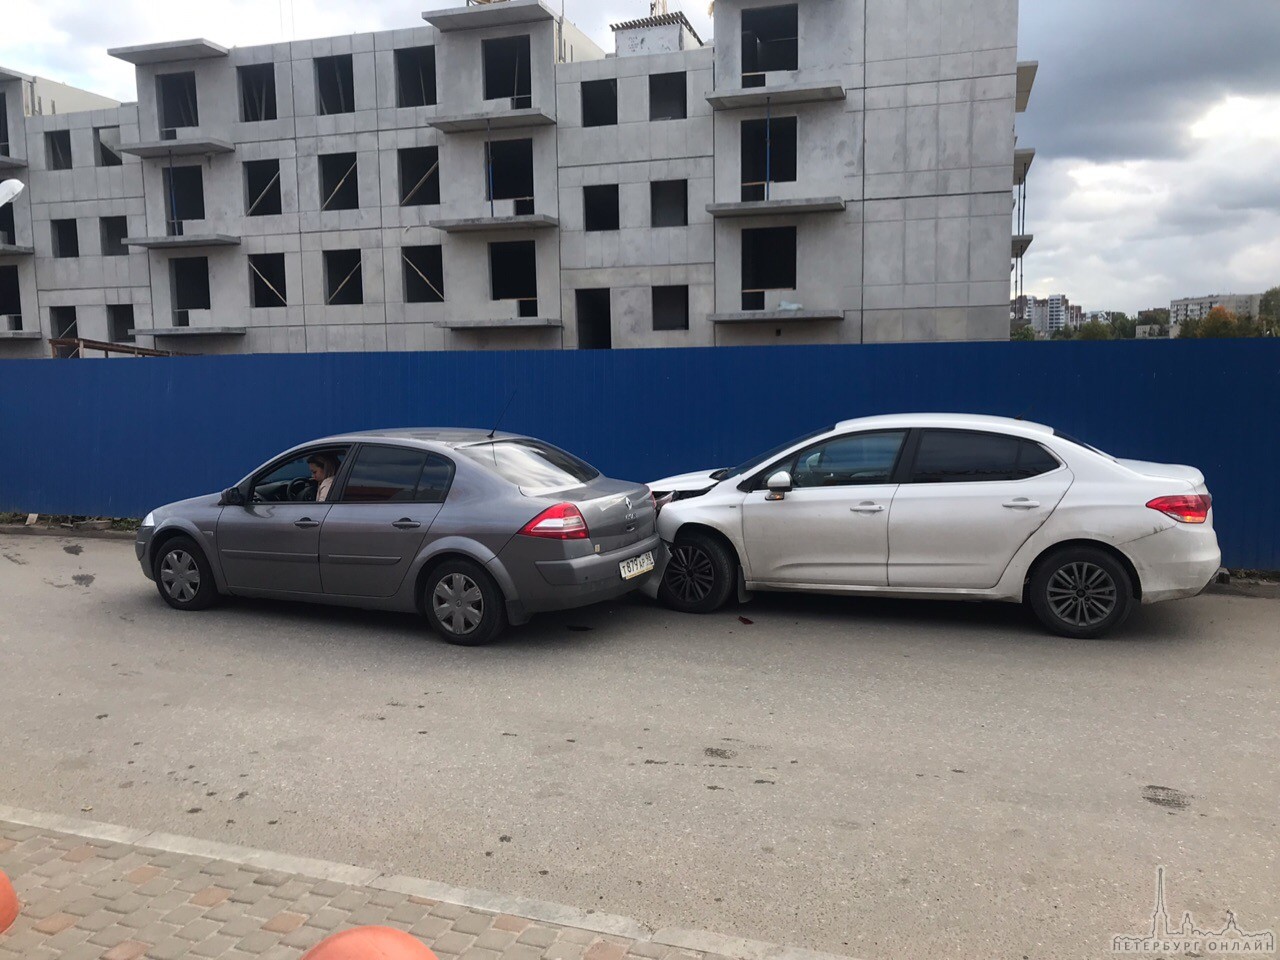 Ищу свидетелей дтп сегодня в Гатчине у Кубуса, в районе 15:30. Девушка за рулем Renault Меган сдавая за...